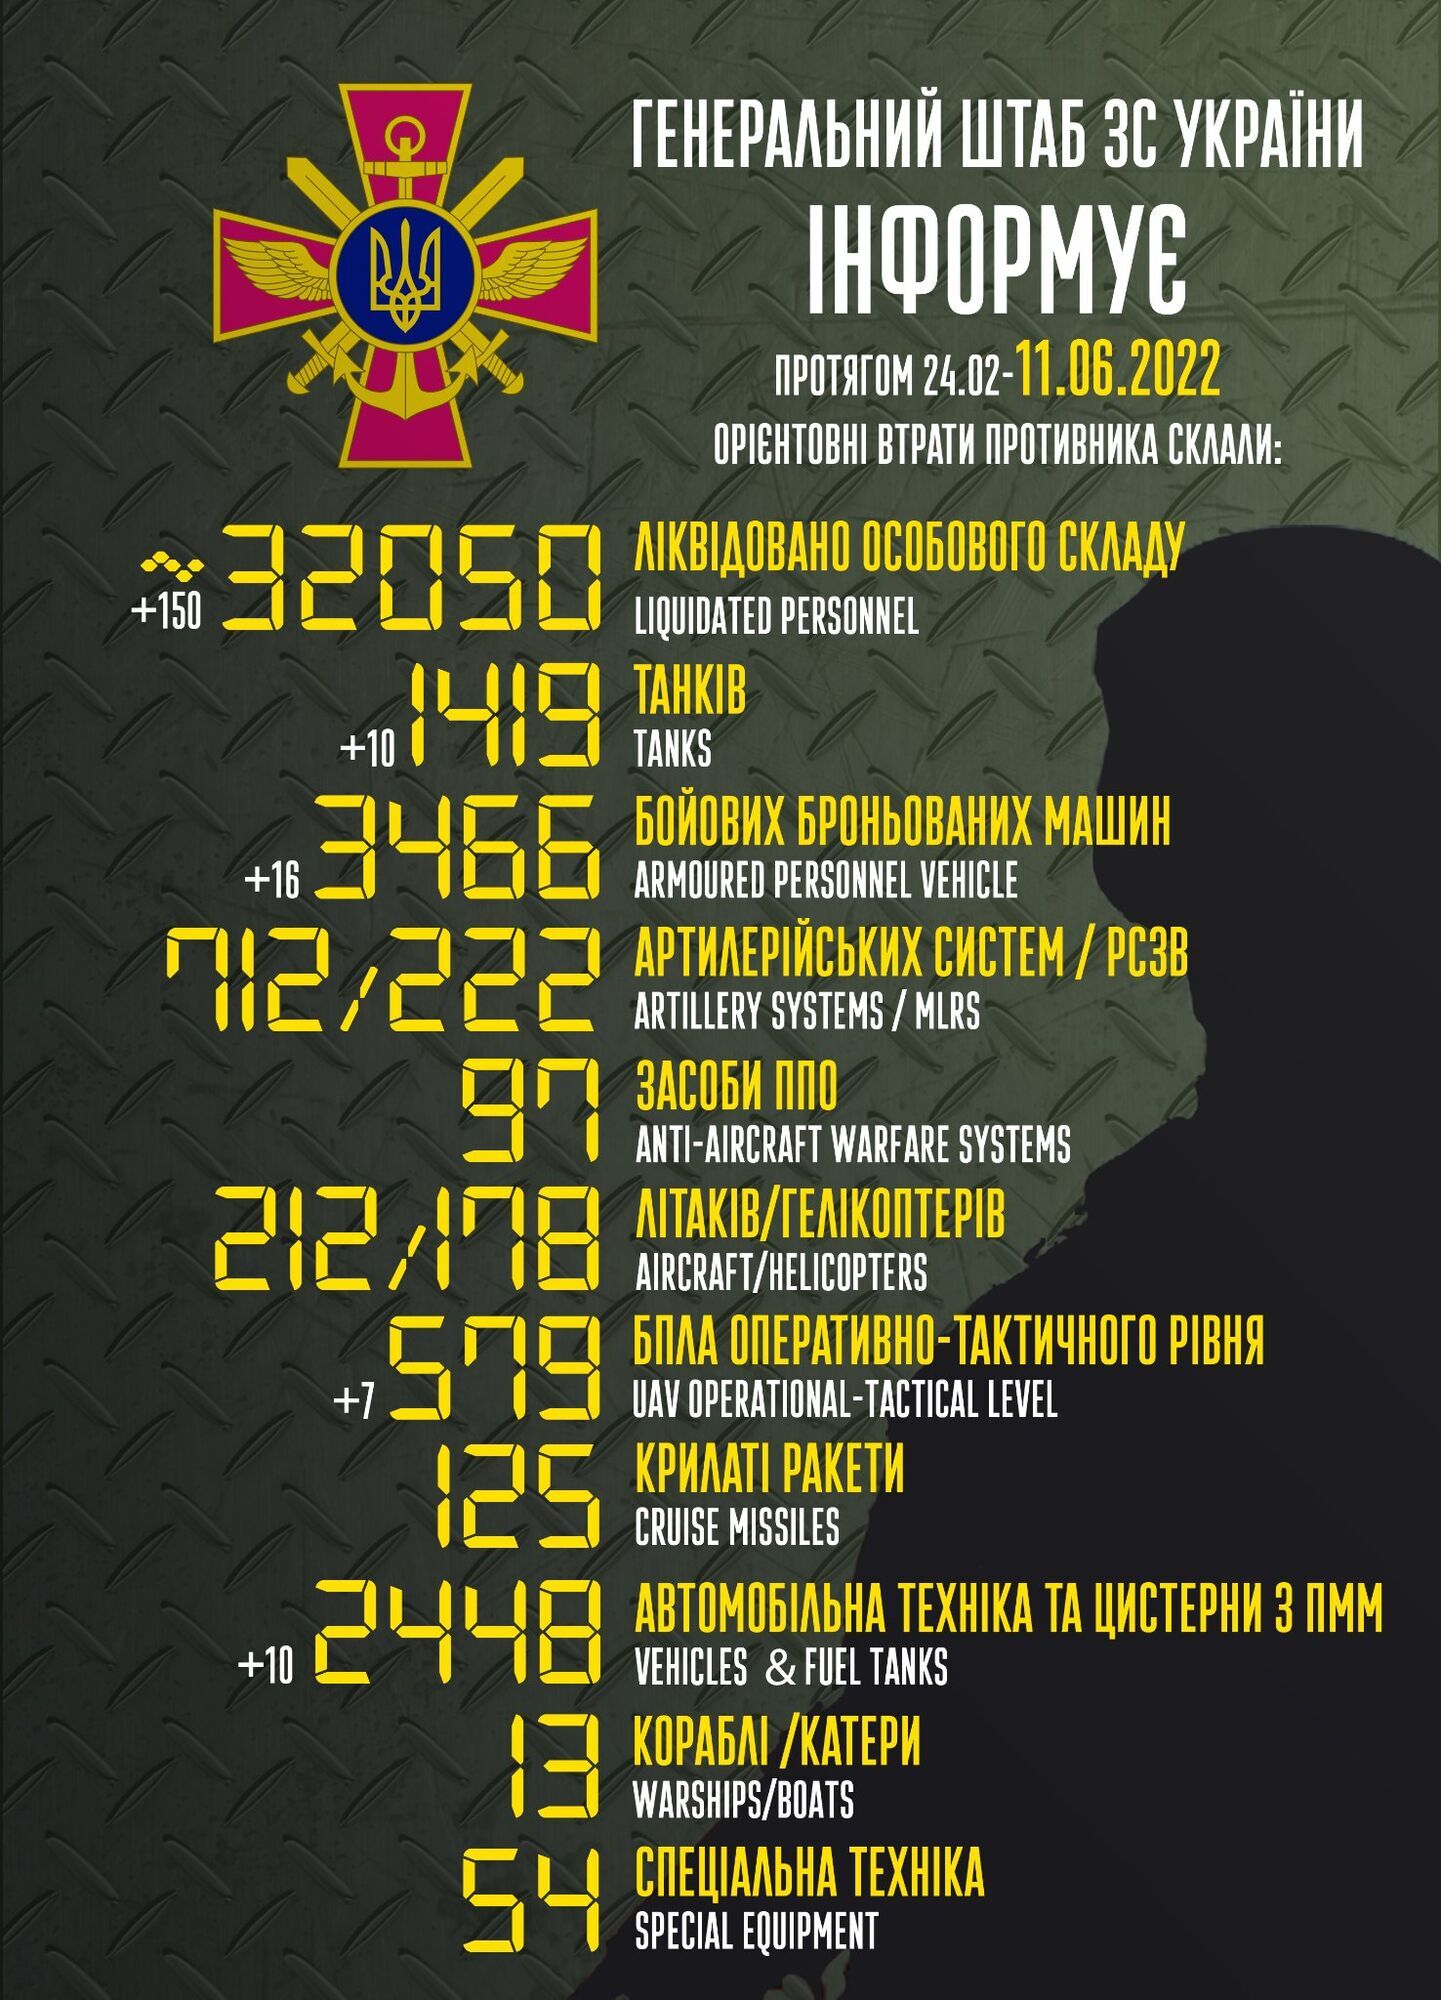 Потери российской армии в Украине